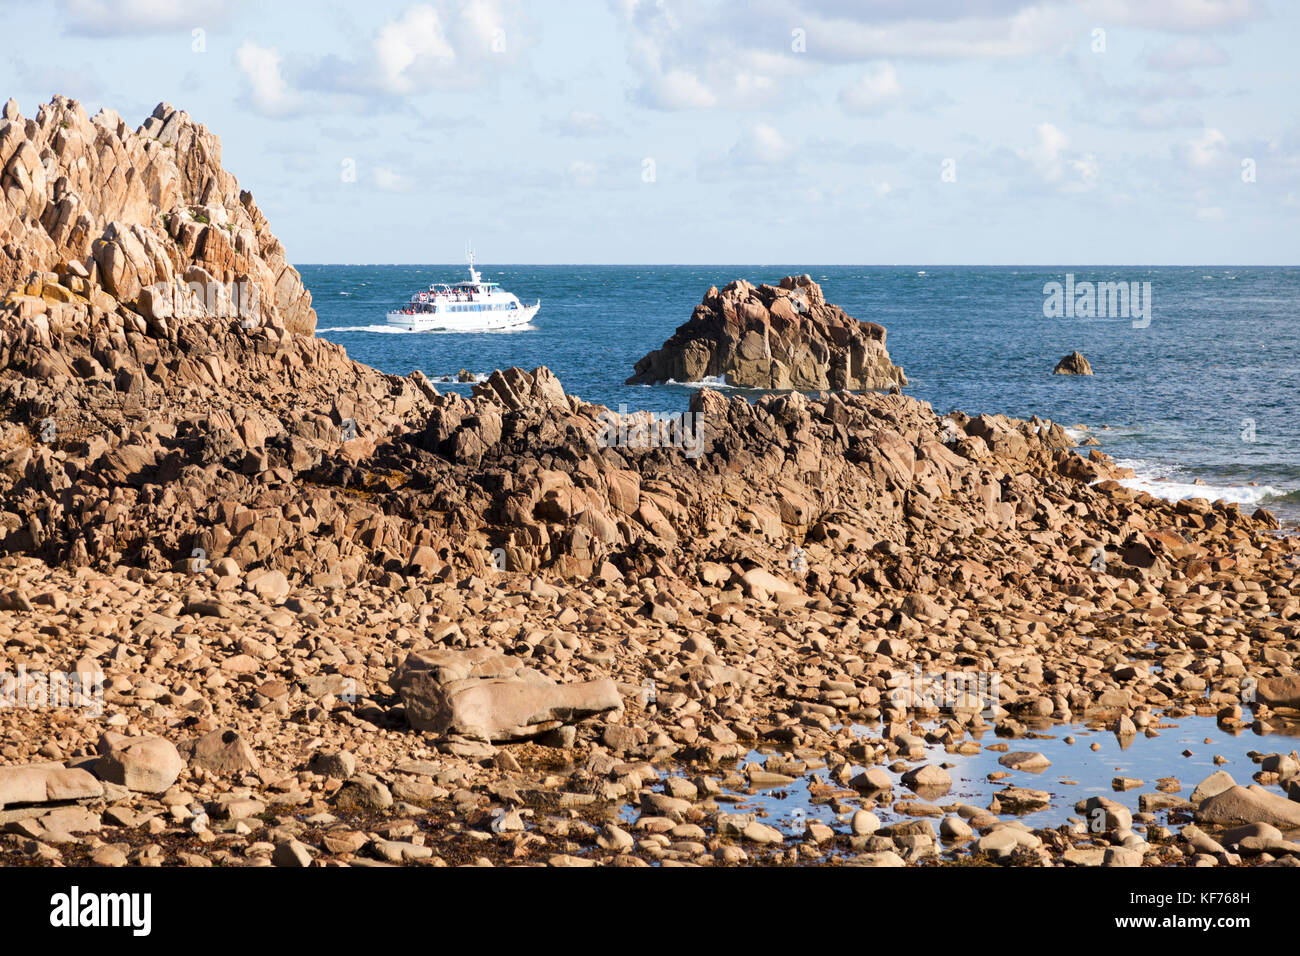 La découverte de l'île de Bréhat à partir de la mer (Bretagne). Il est possible de lancer d'obtenir 45 minutes de balade commentée longue de l'île. Banque D'Images